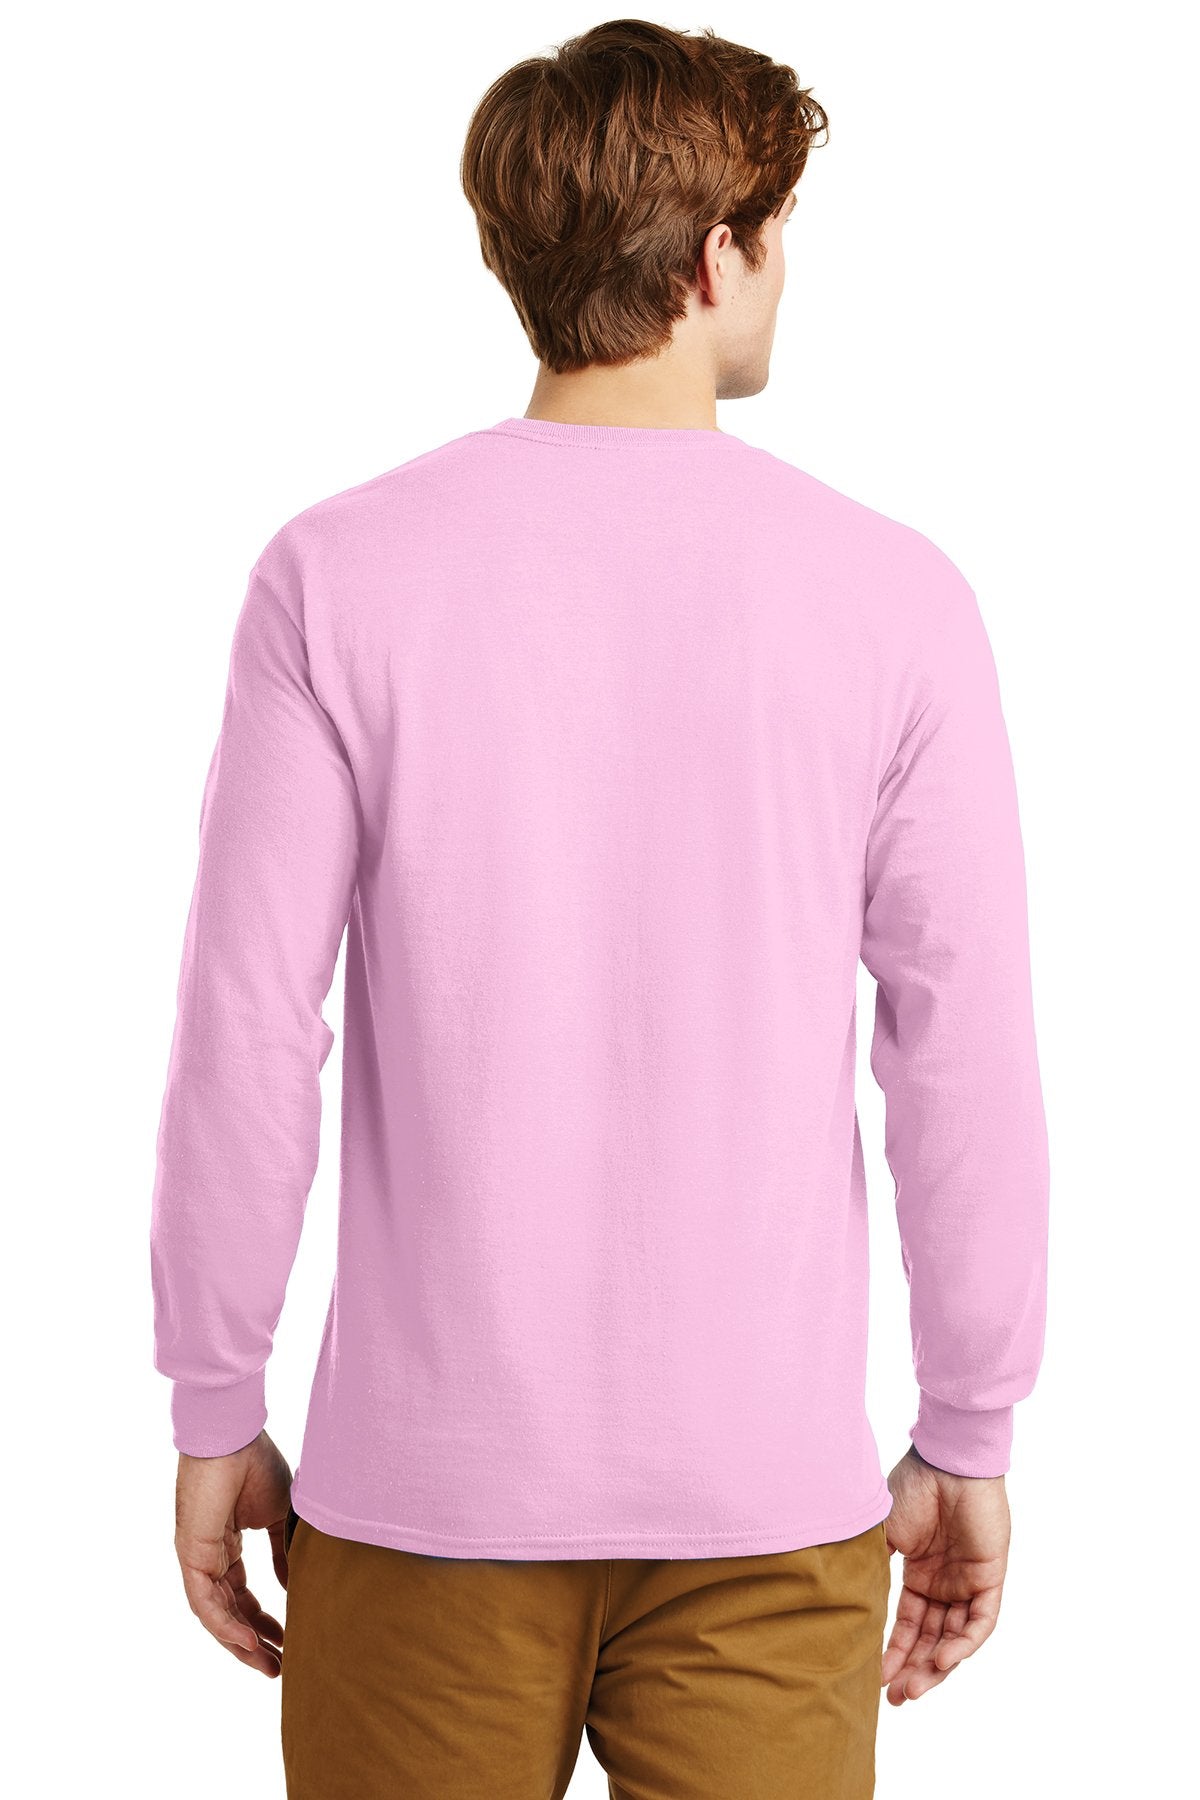 gildan ultra cotton long sleeve t shirt g2400 light pink